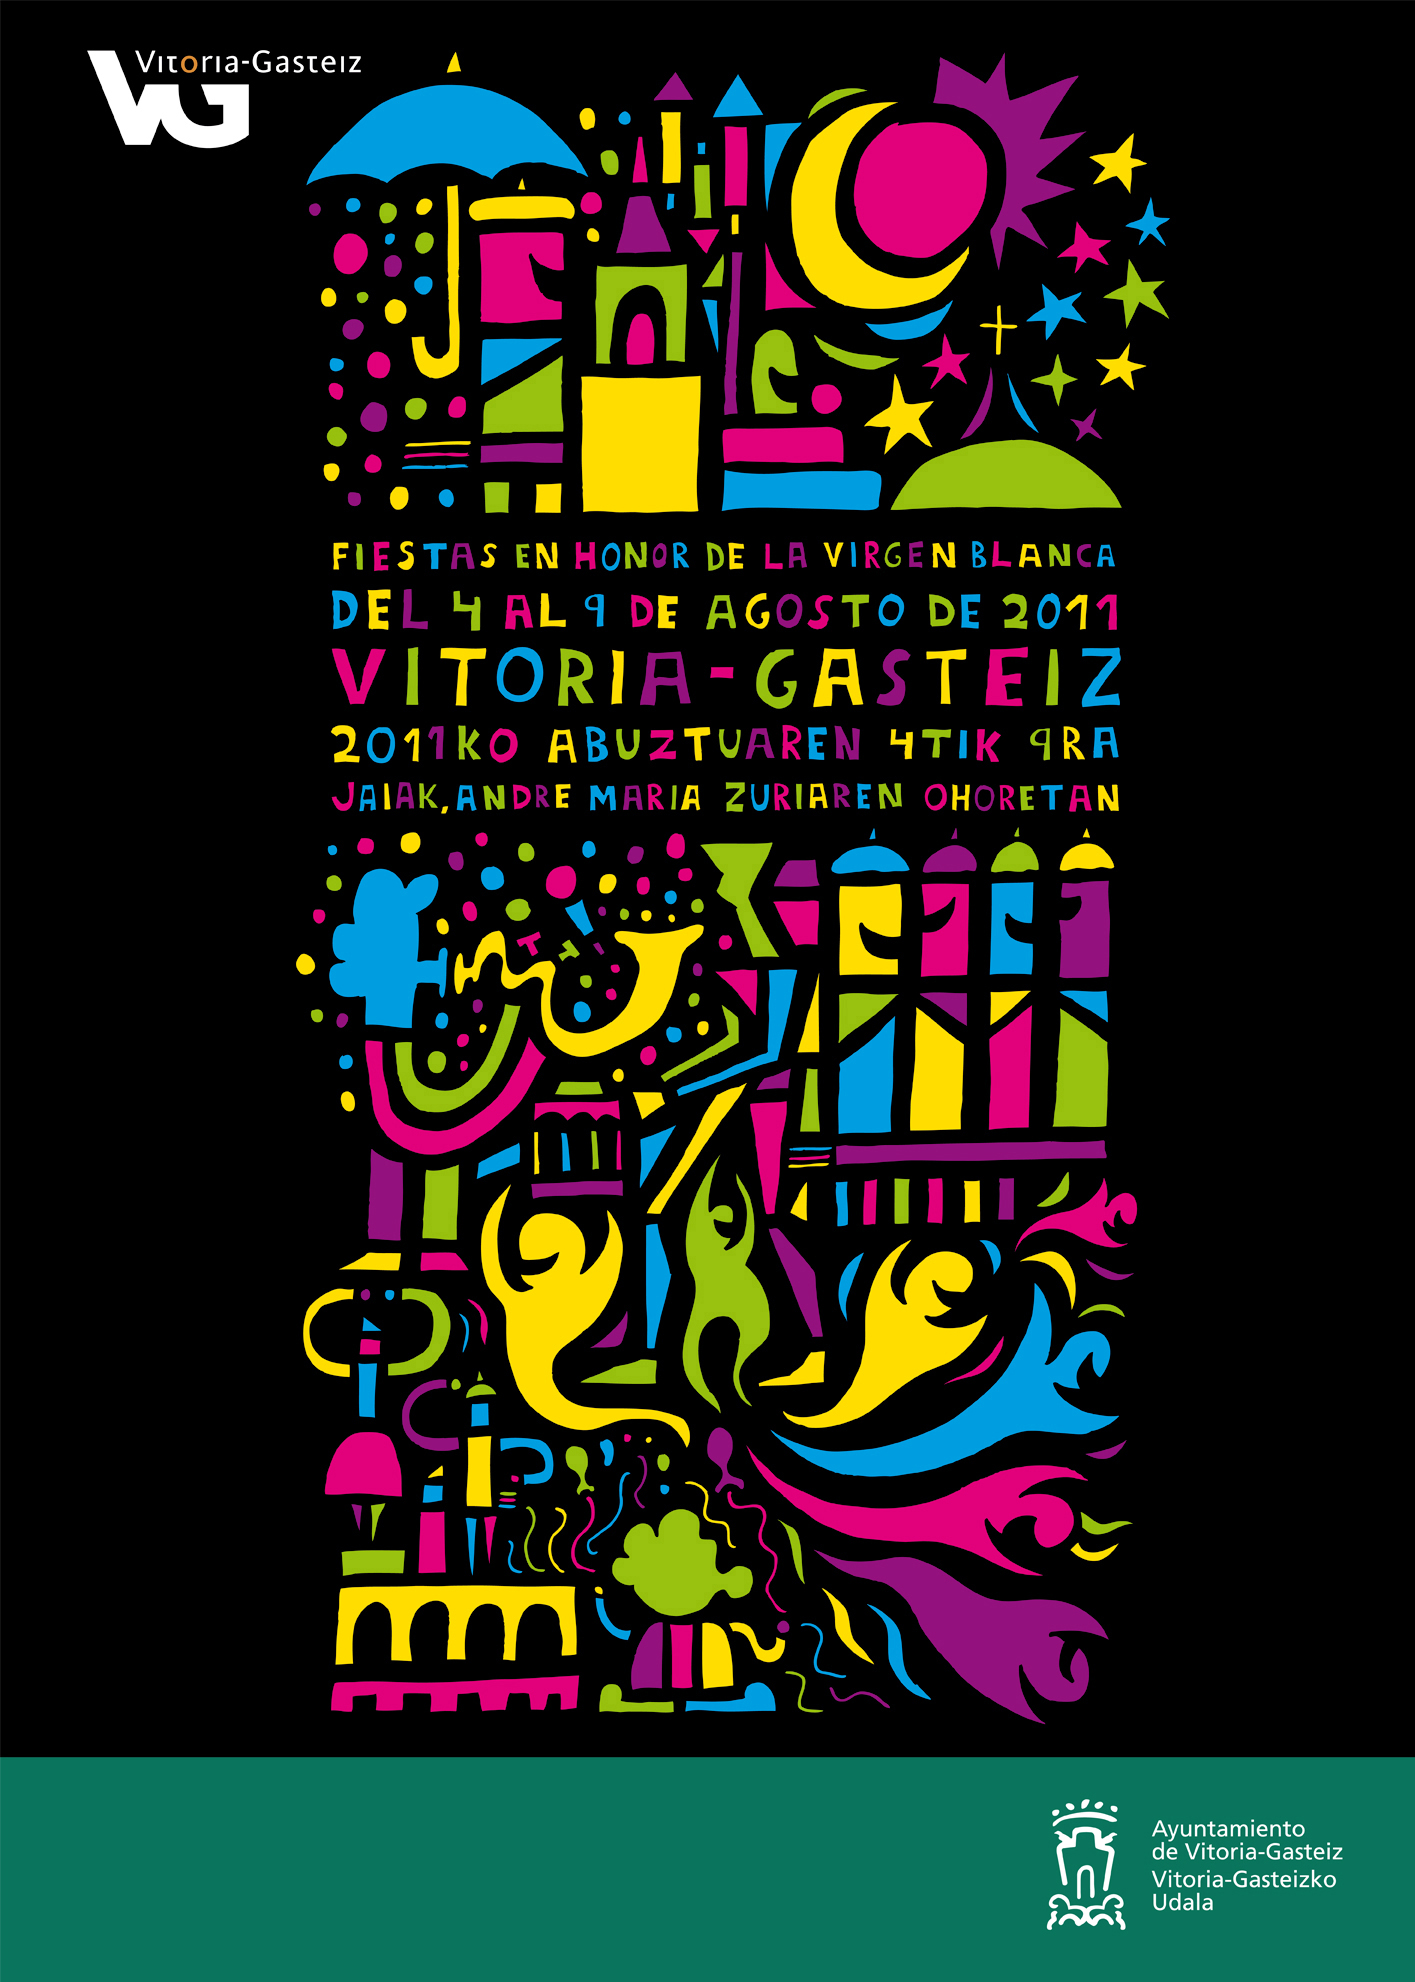 Este es "Pupurri", el cartel anunciador de las fiestas de La Blanca 2011.